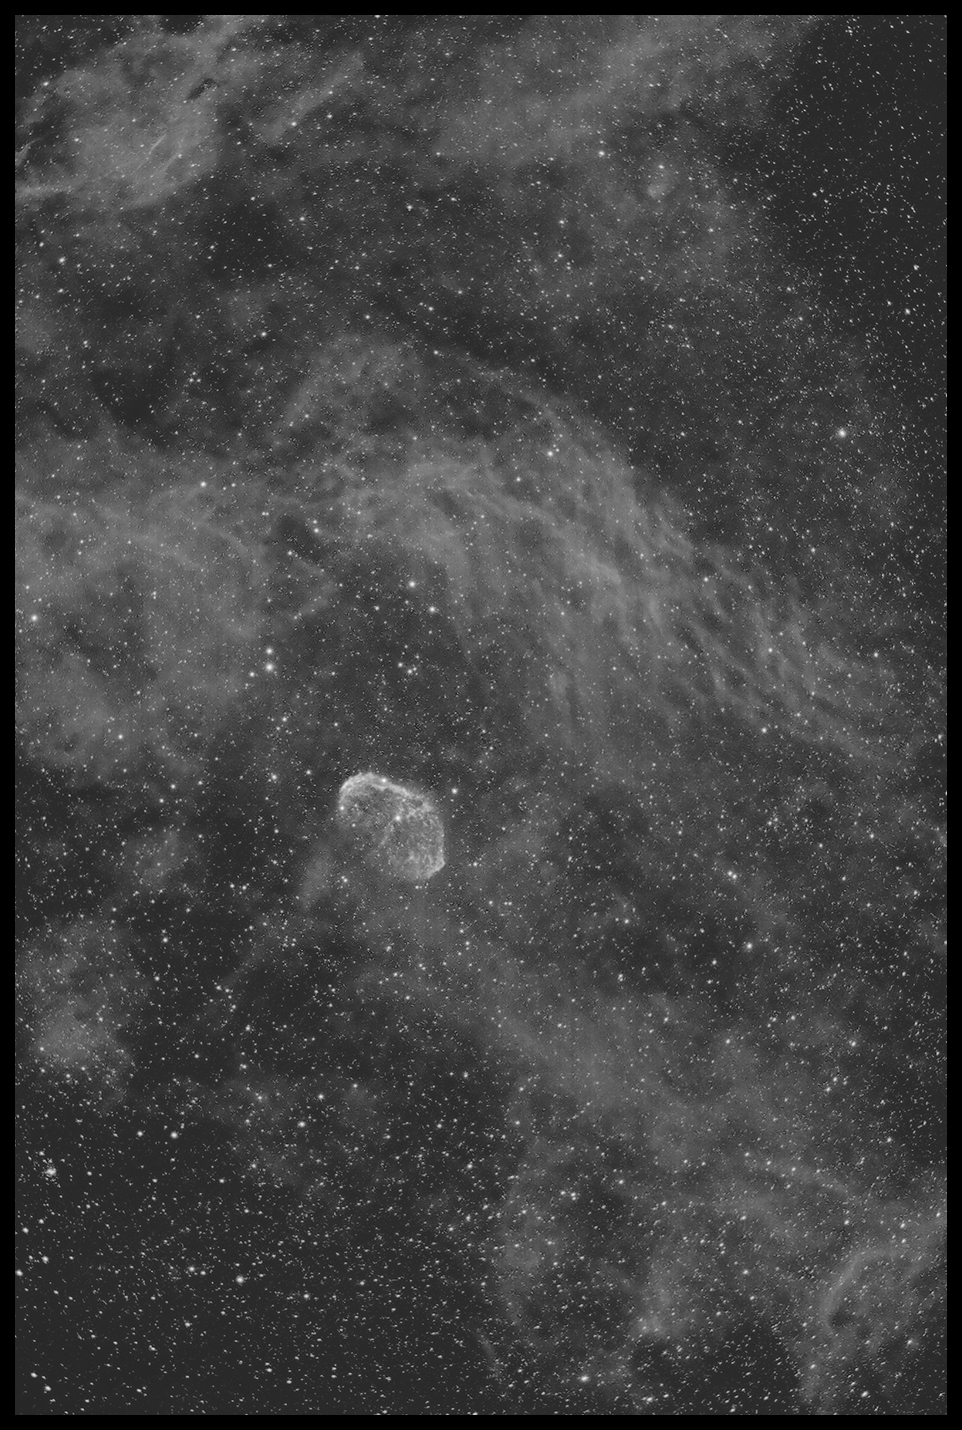 NGC 6888